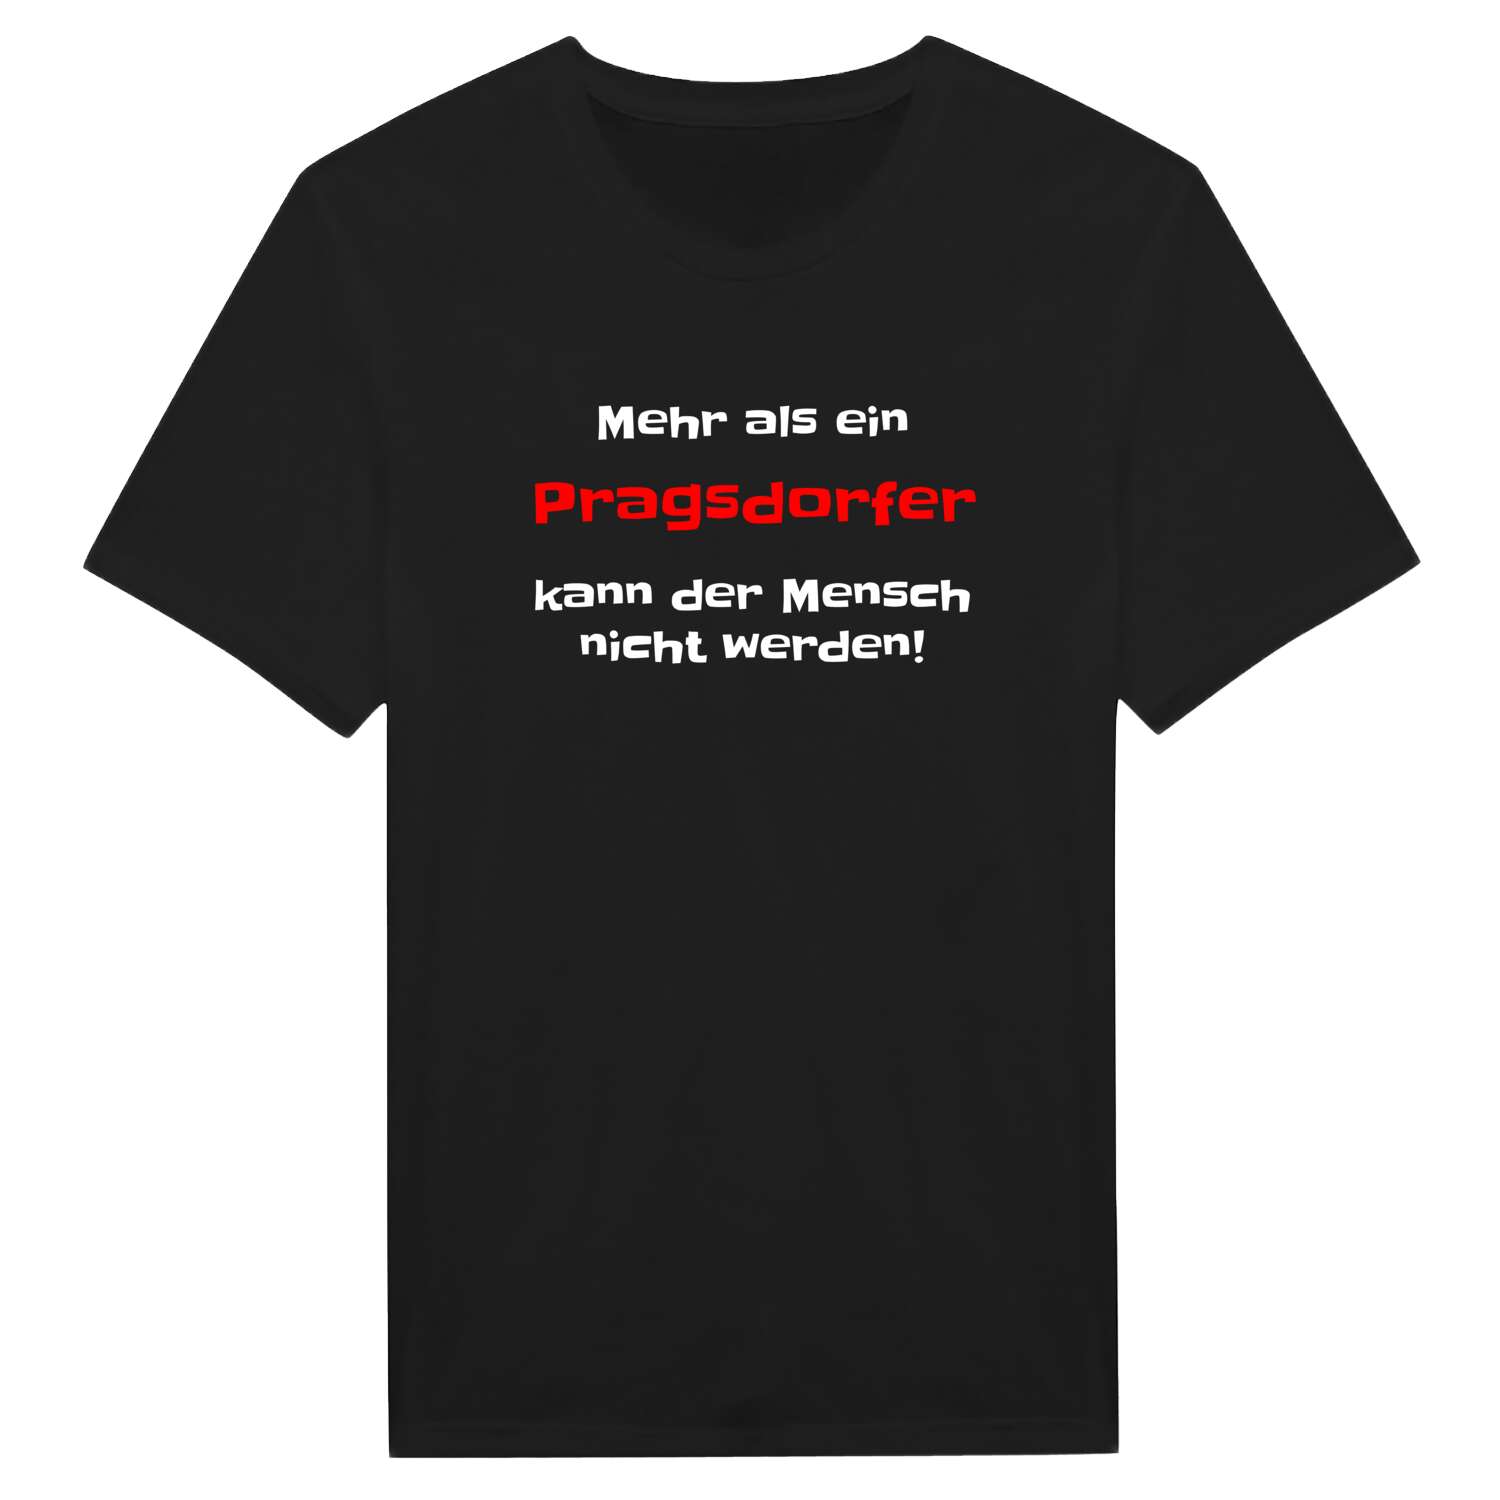 Pragsdorf T-Shirt »Mehr als ein«